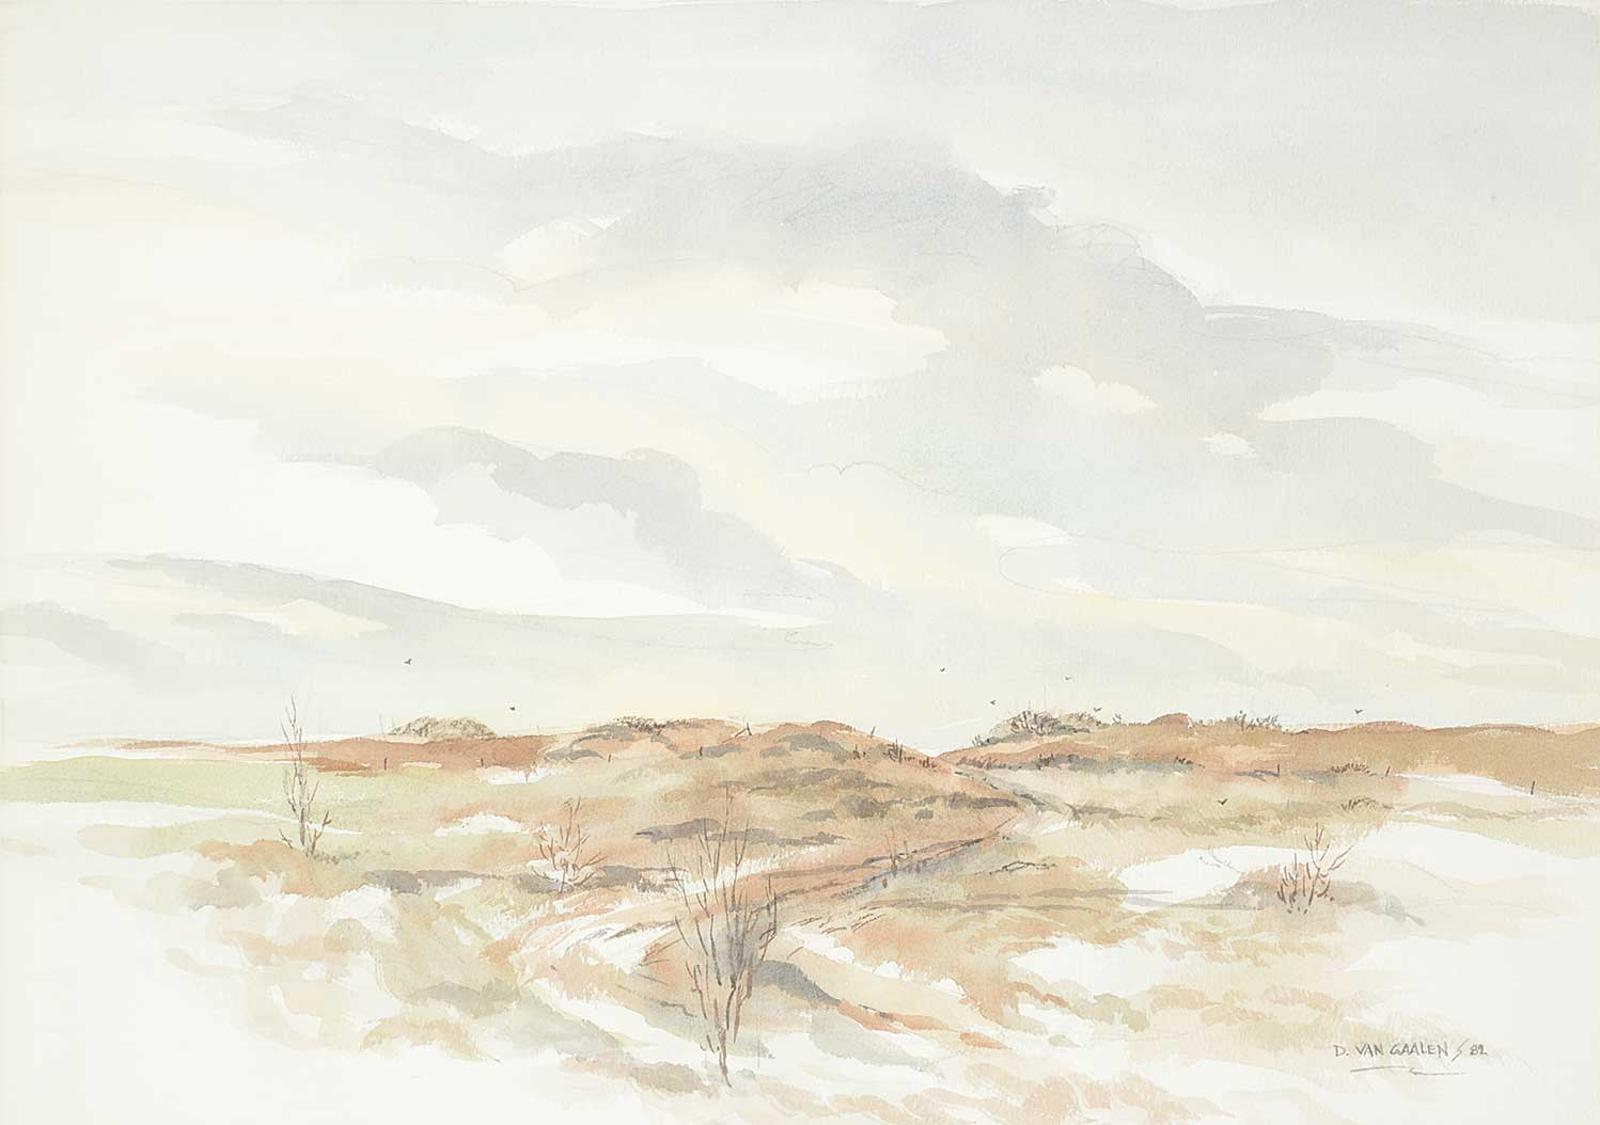 D. VanGaalens - Untitled - Prairie Road